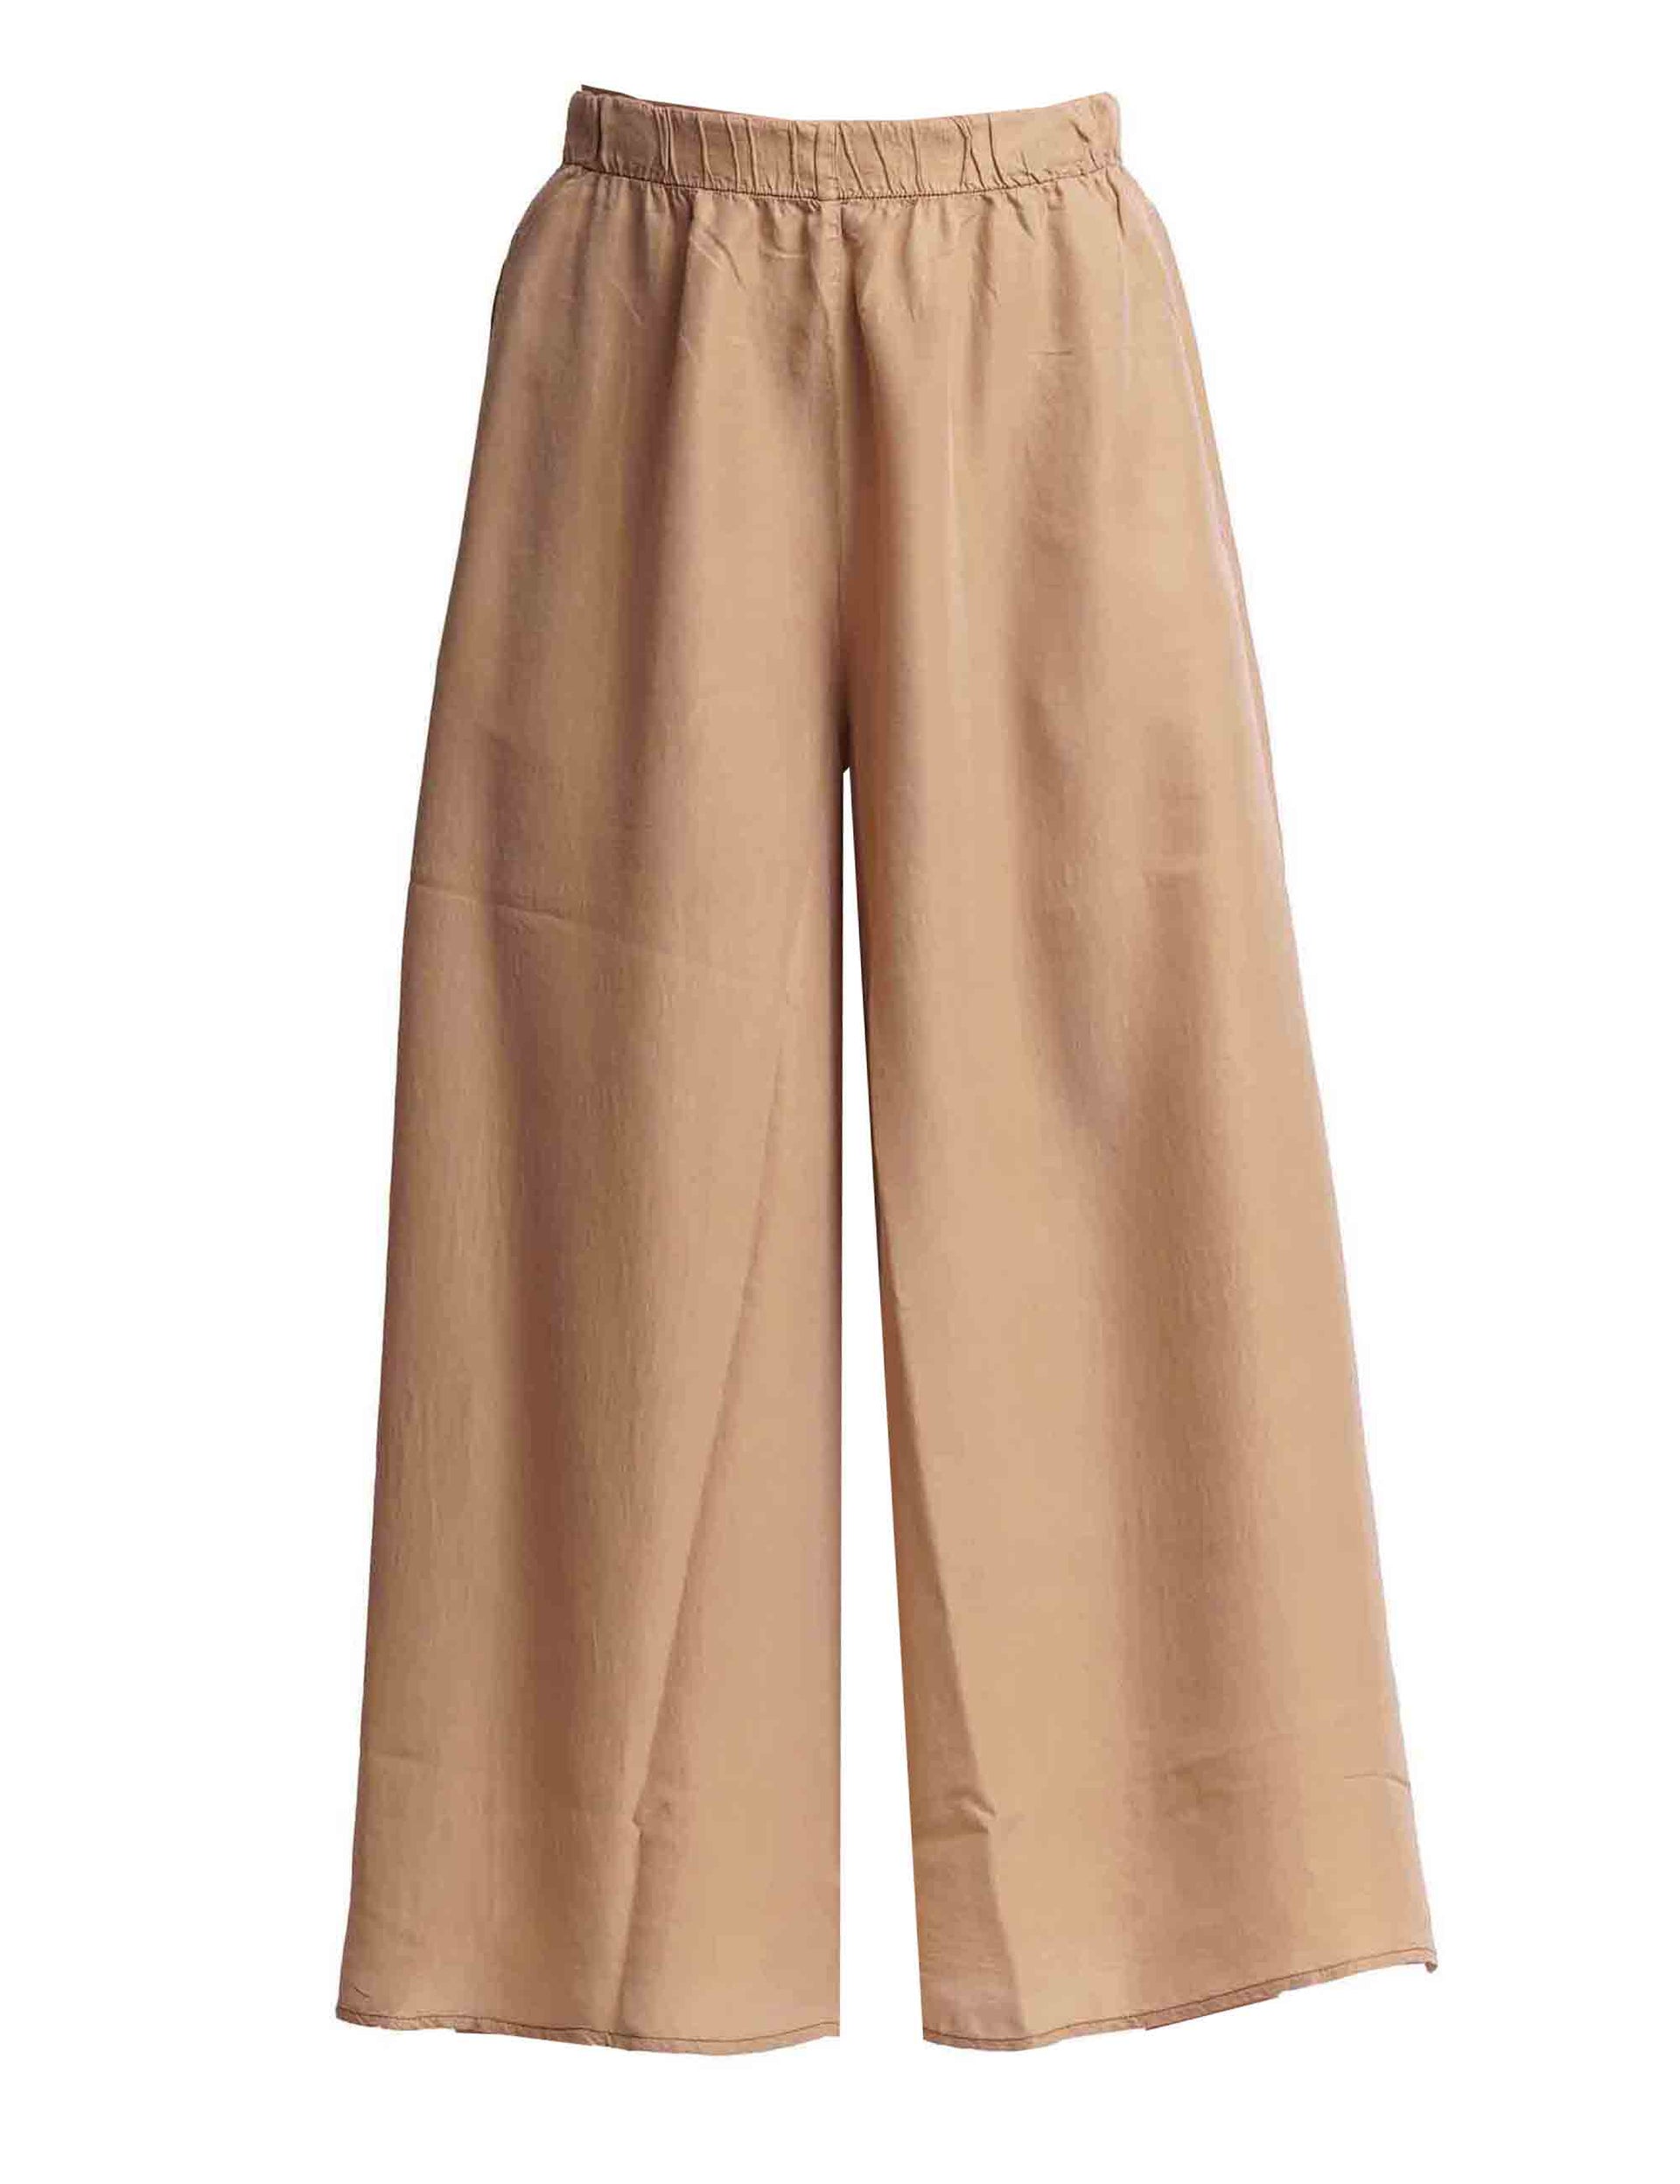 Women's wide-leg trousers in pure camel silk